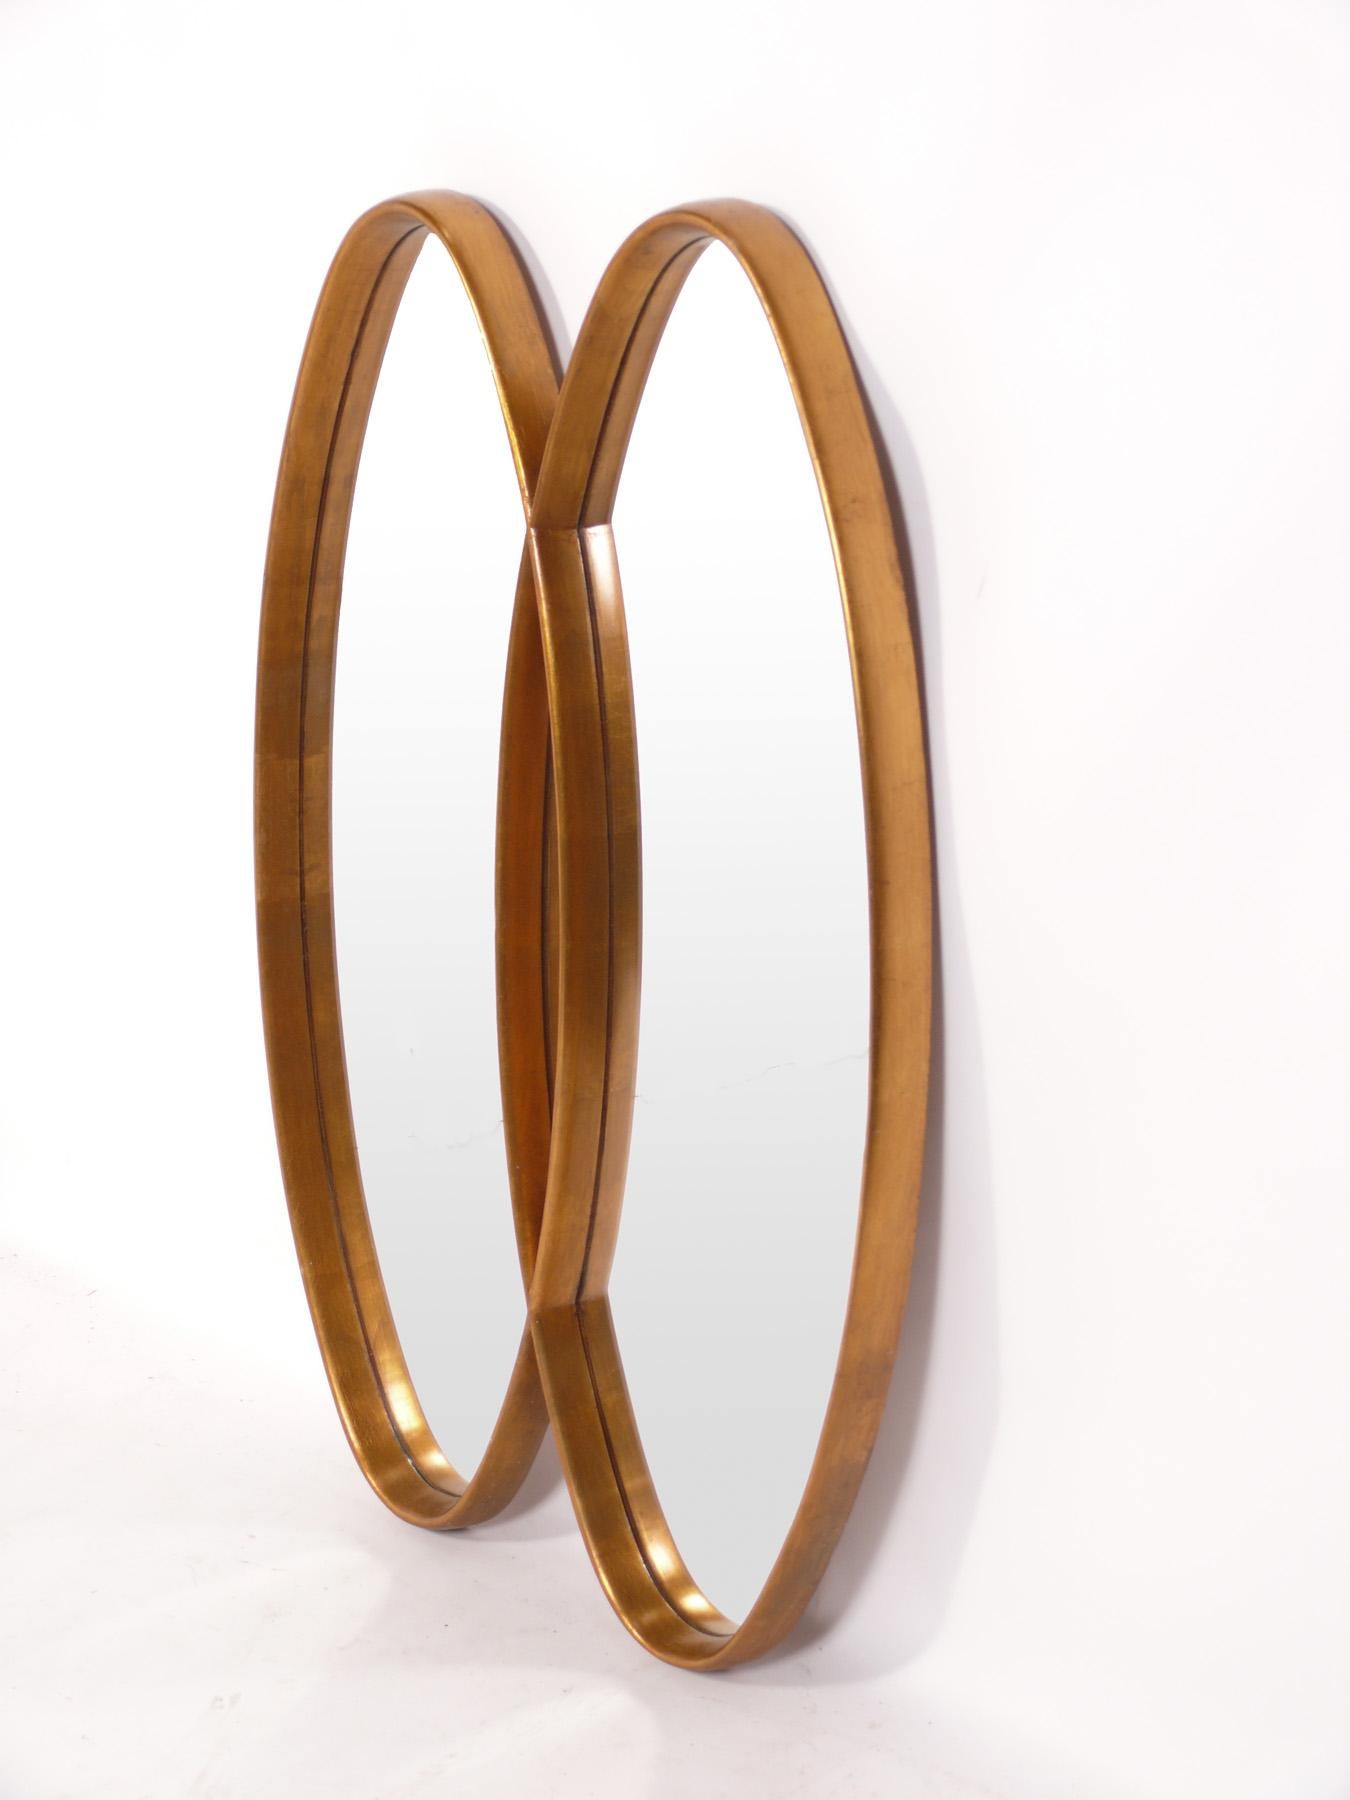 Miroir sculpté double ovale doré, américain, vers les années 1960. Ce miroir a une forme sculpturale et s'intègre parfaitement dans un large éventail d'intérieurs, des plus traditionnels aux plus modernes.